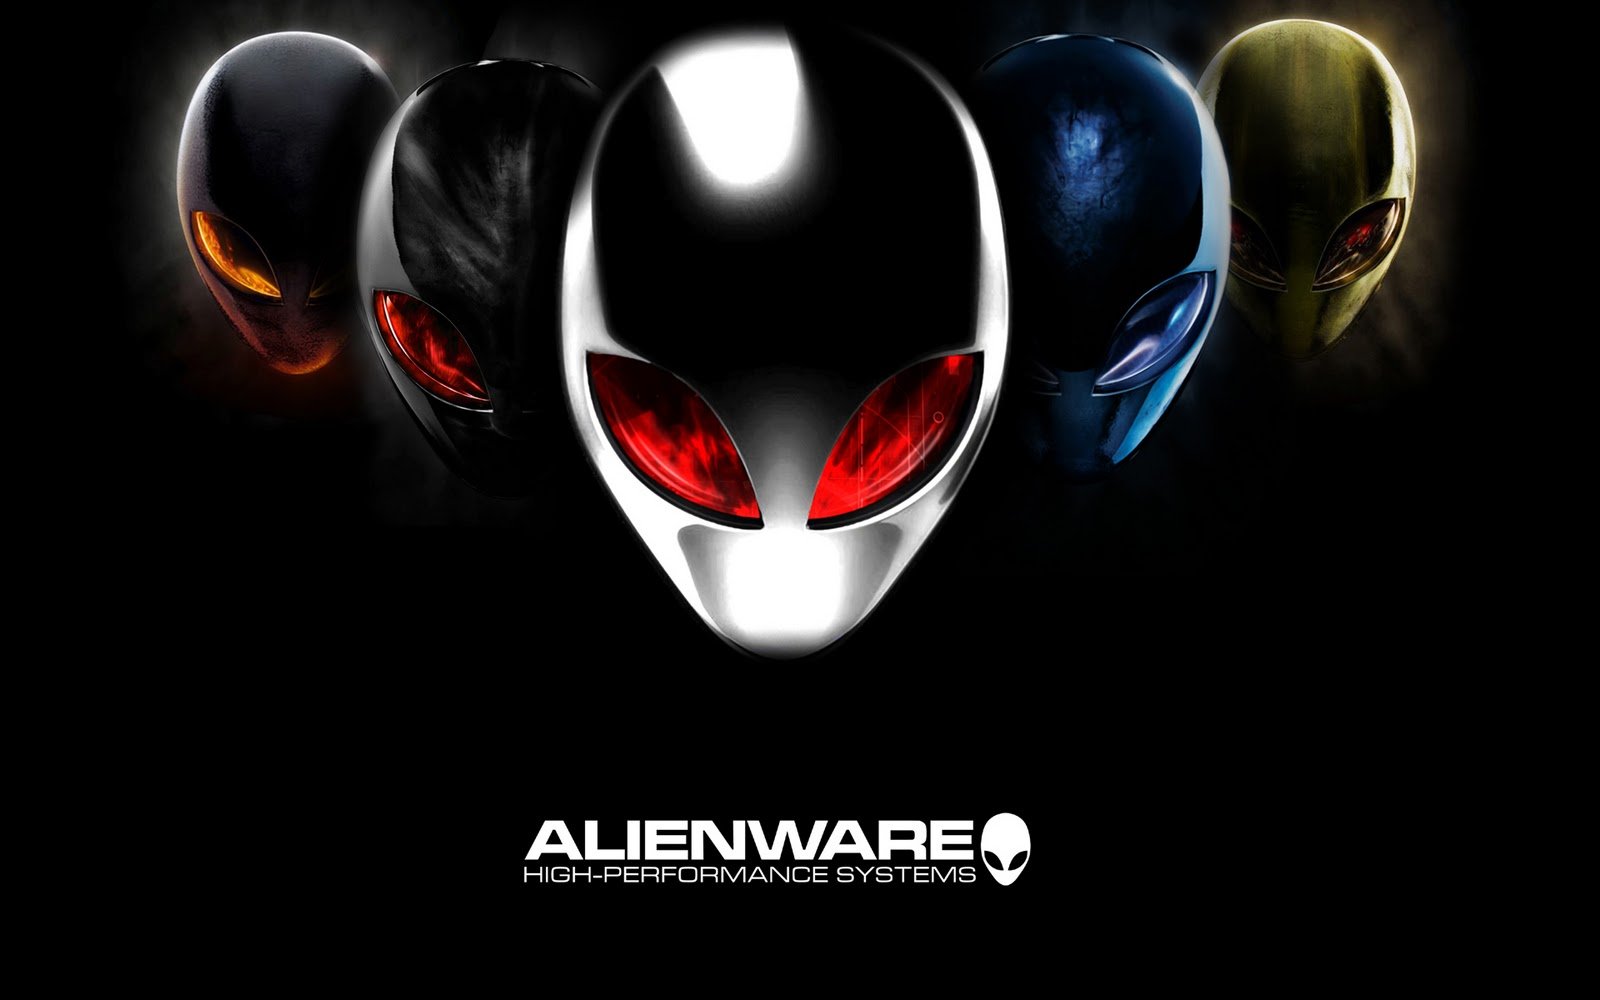 Alienware Wallpaper 1080p - WallpaperSafari